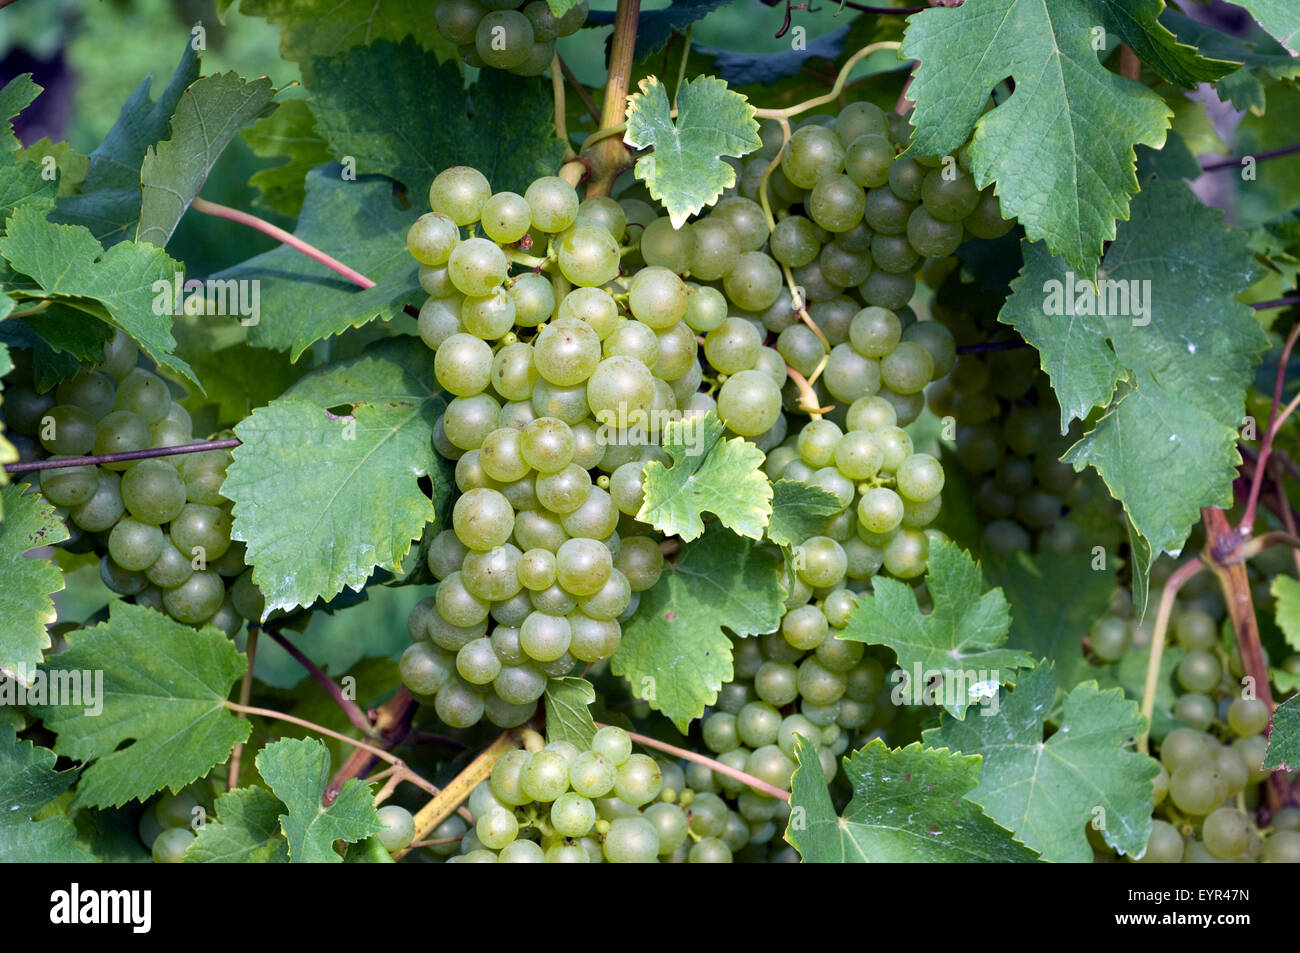 Fendant; Gutedel; Weisse Weintrauben, Wein, Weinpflanzen, Reben, Fruechte, Beeren, Obst, Stock Photo